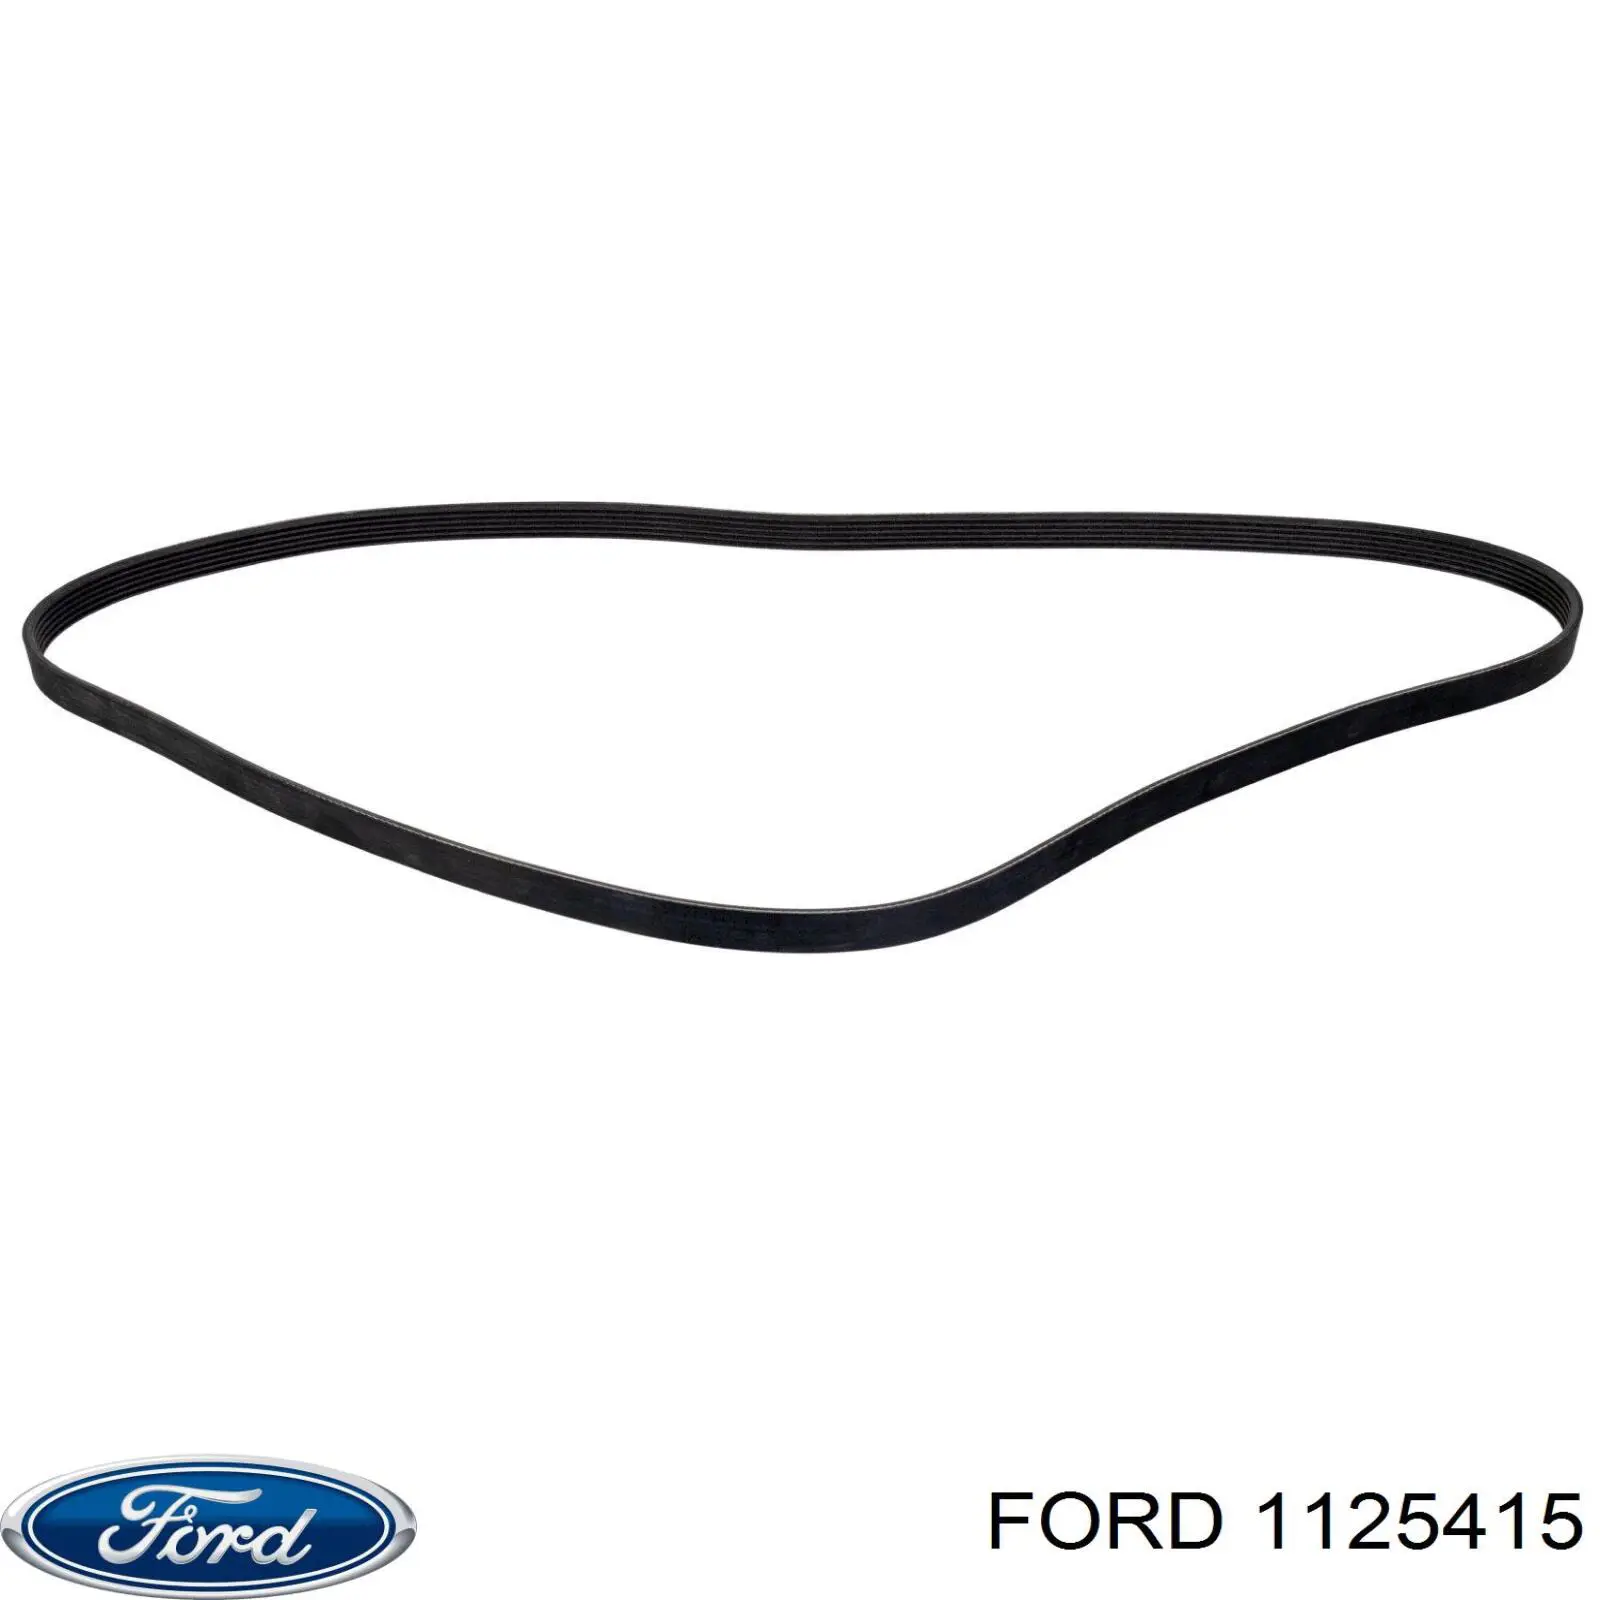 1125415 Ford correa trapezoidal